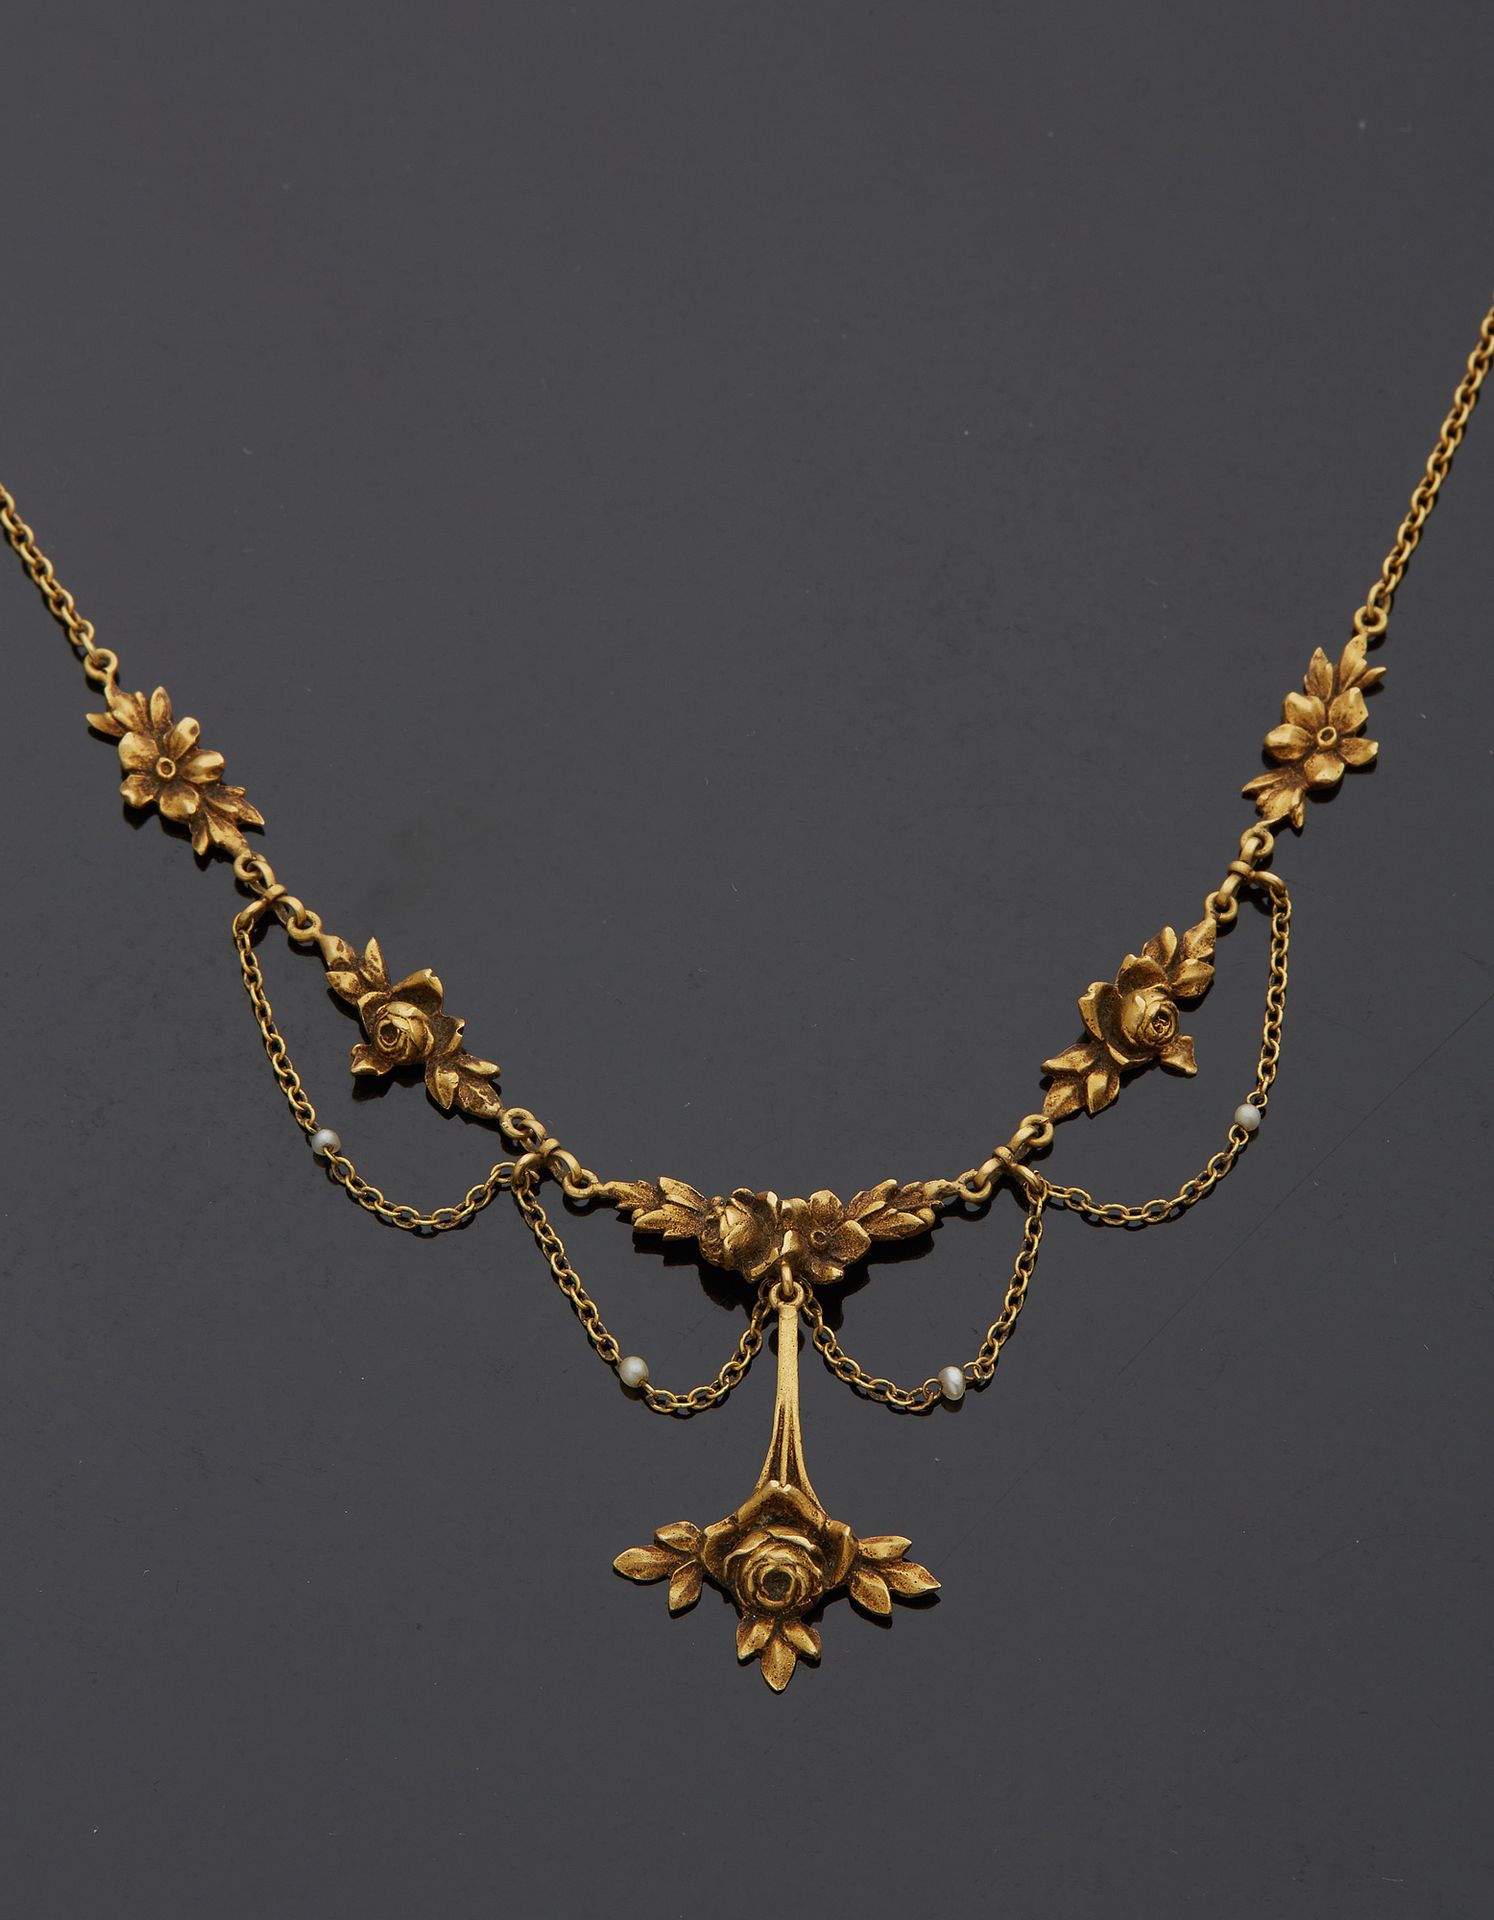 Null 750‰的18K黄金项链，带玫瑰图案的帷幔，装饰着精美的珍珠。

长40,50厘米 毛重10,50克